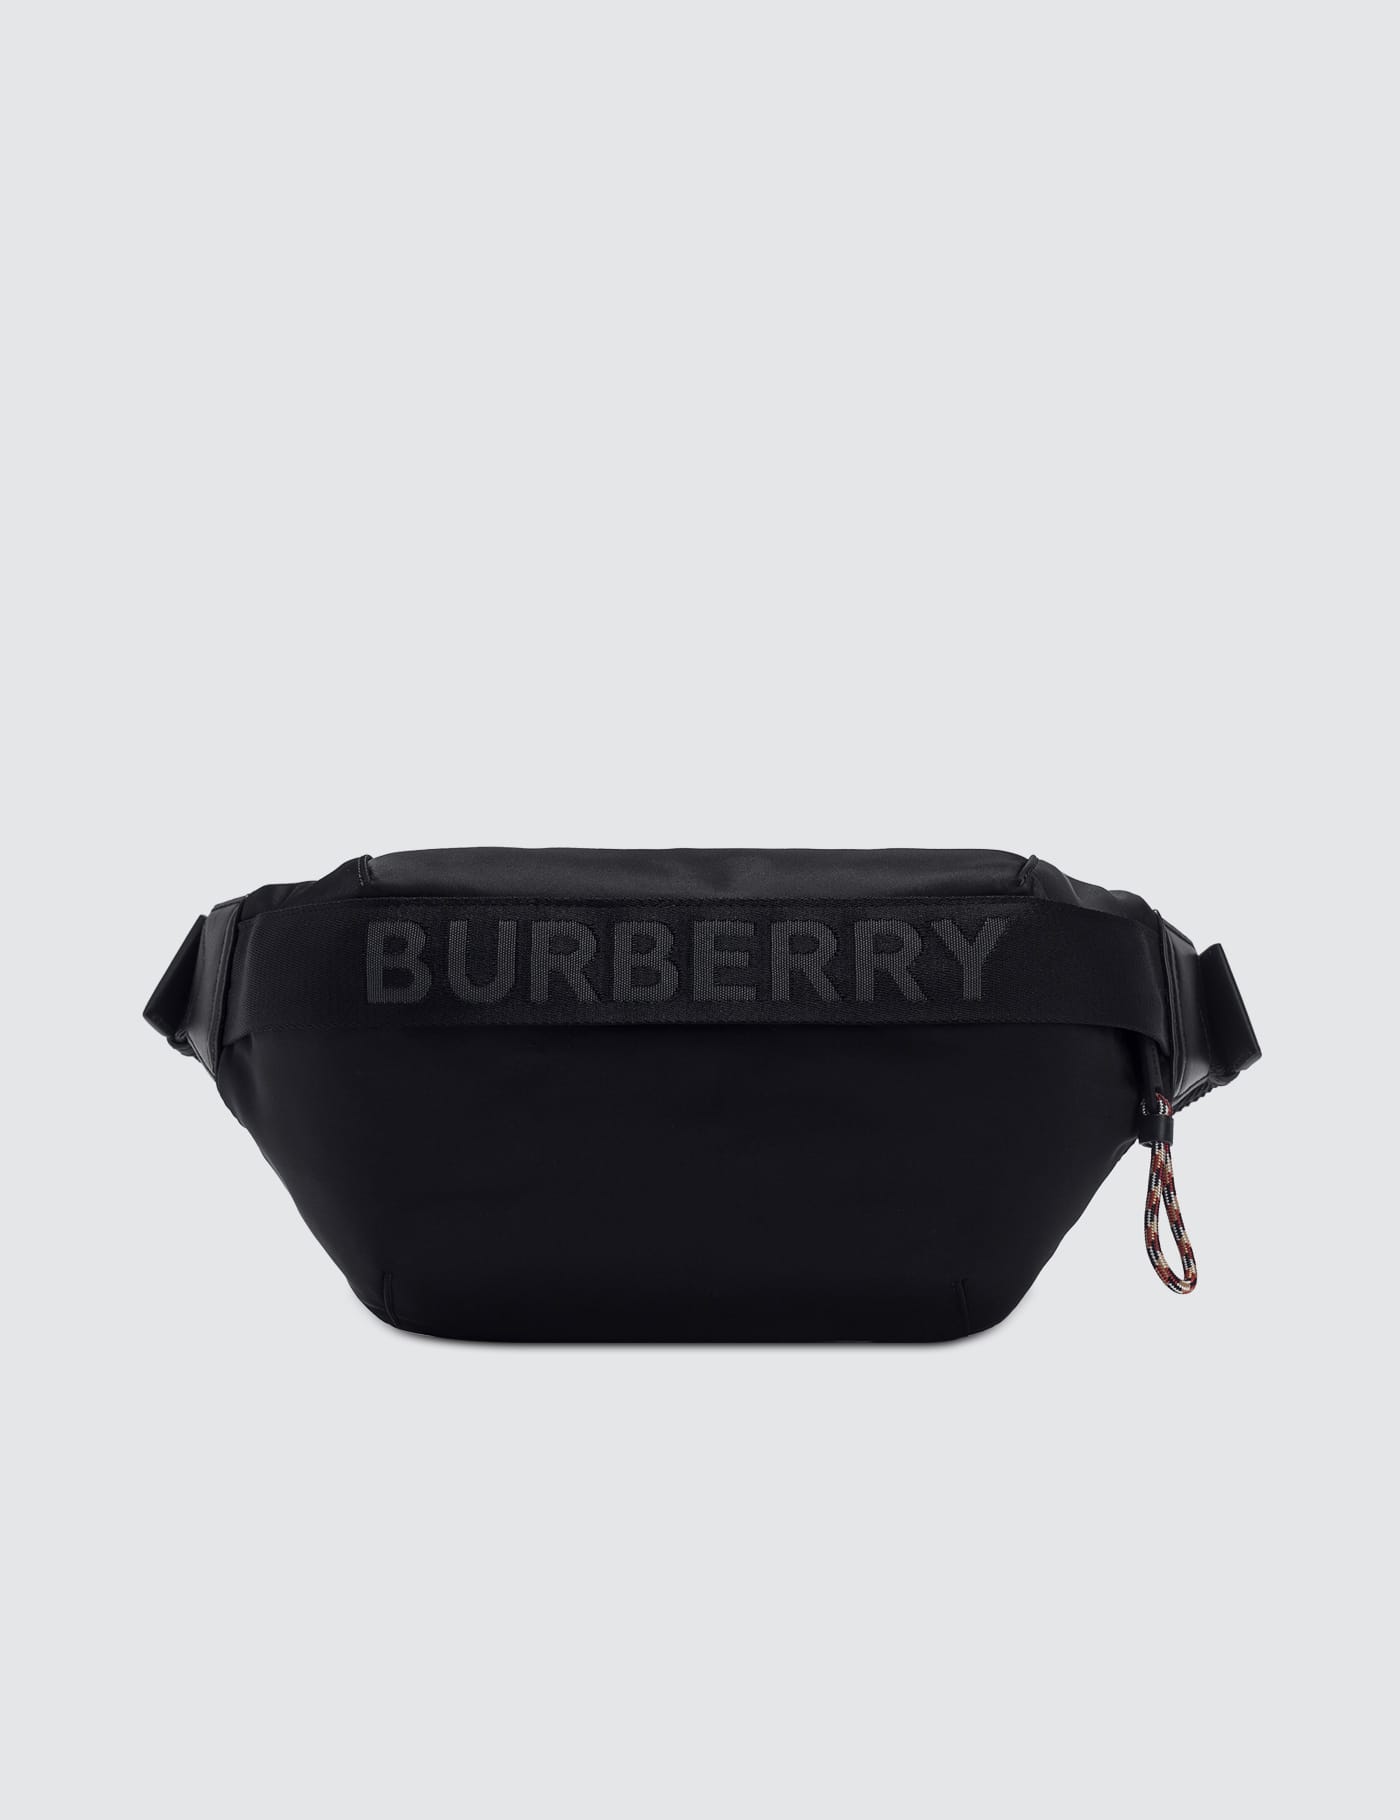 burberry bum bag sale